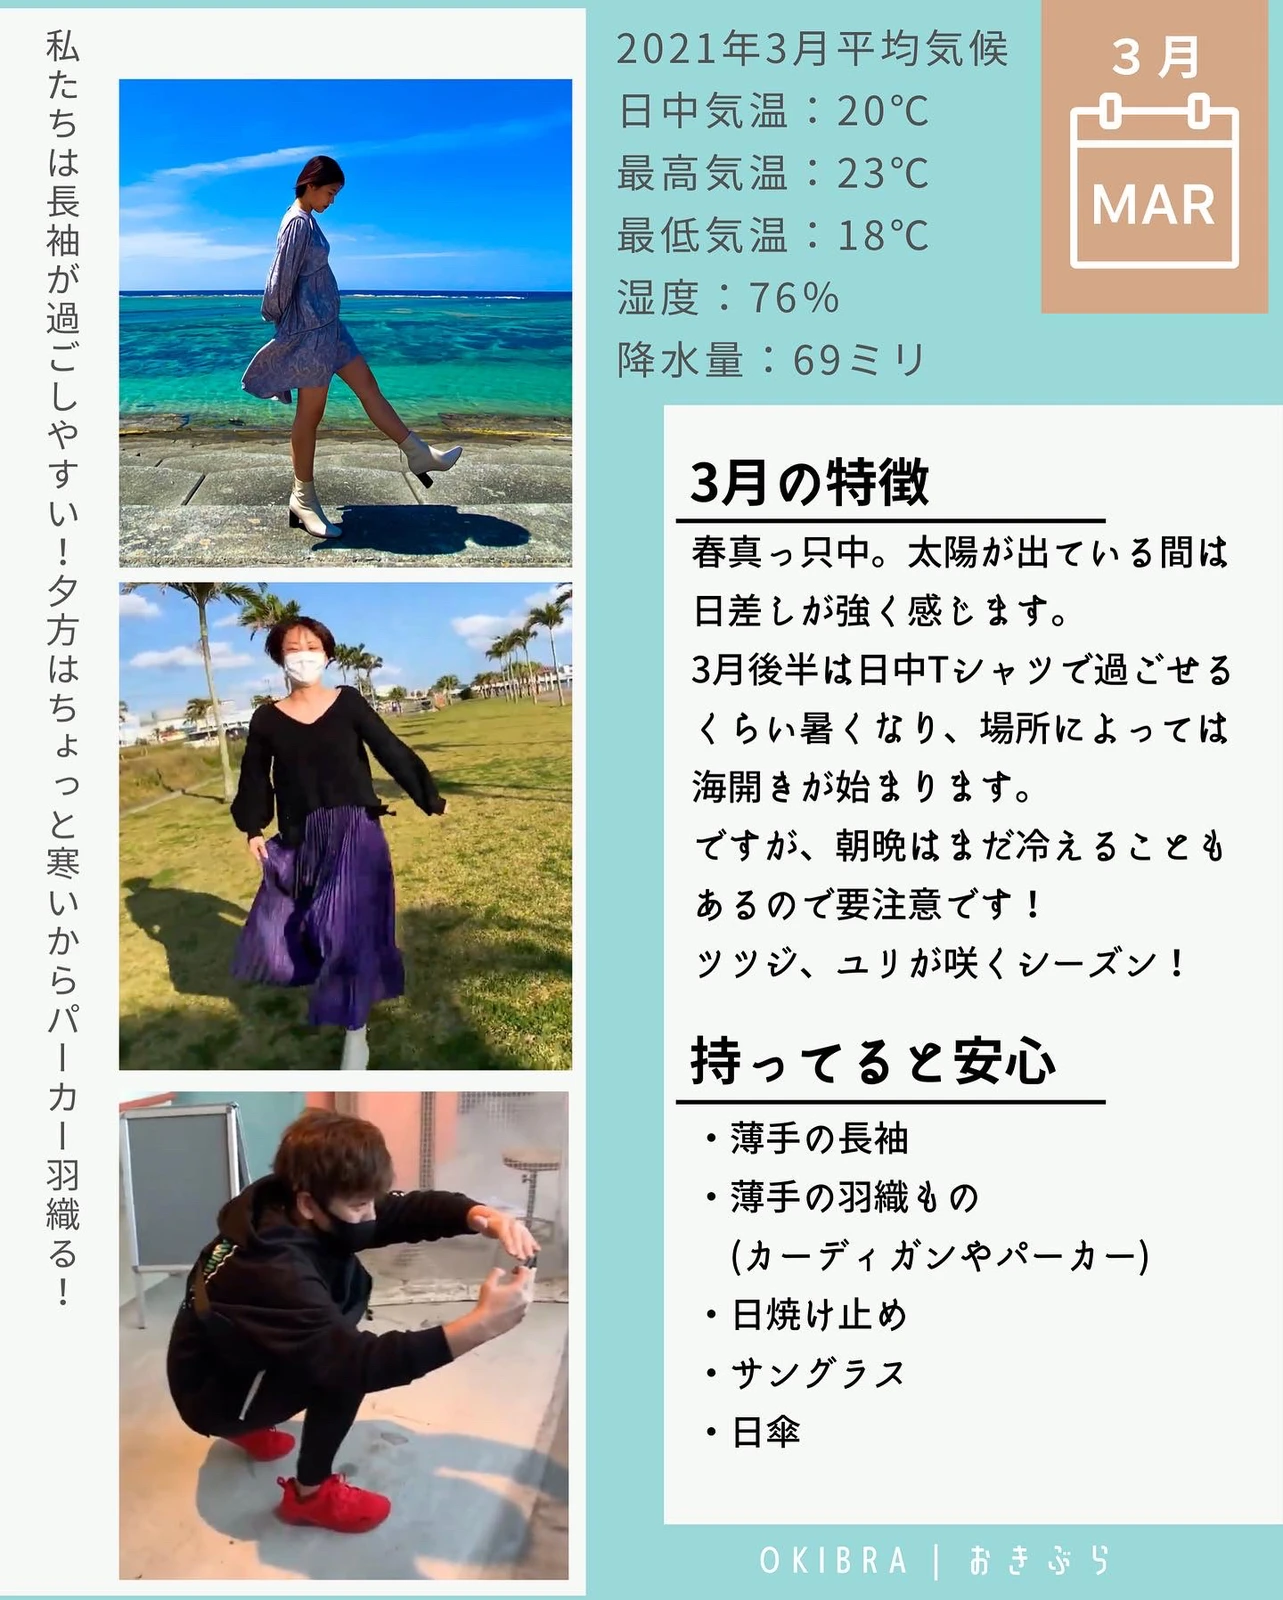 見ると安心 3月 5月の沖縄での服装 おきぶらokibraが投稿したフォトブック Lemon8